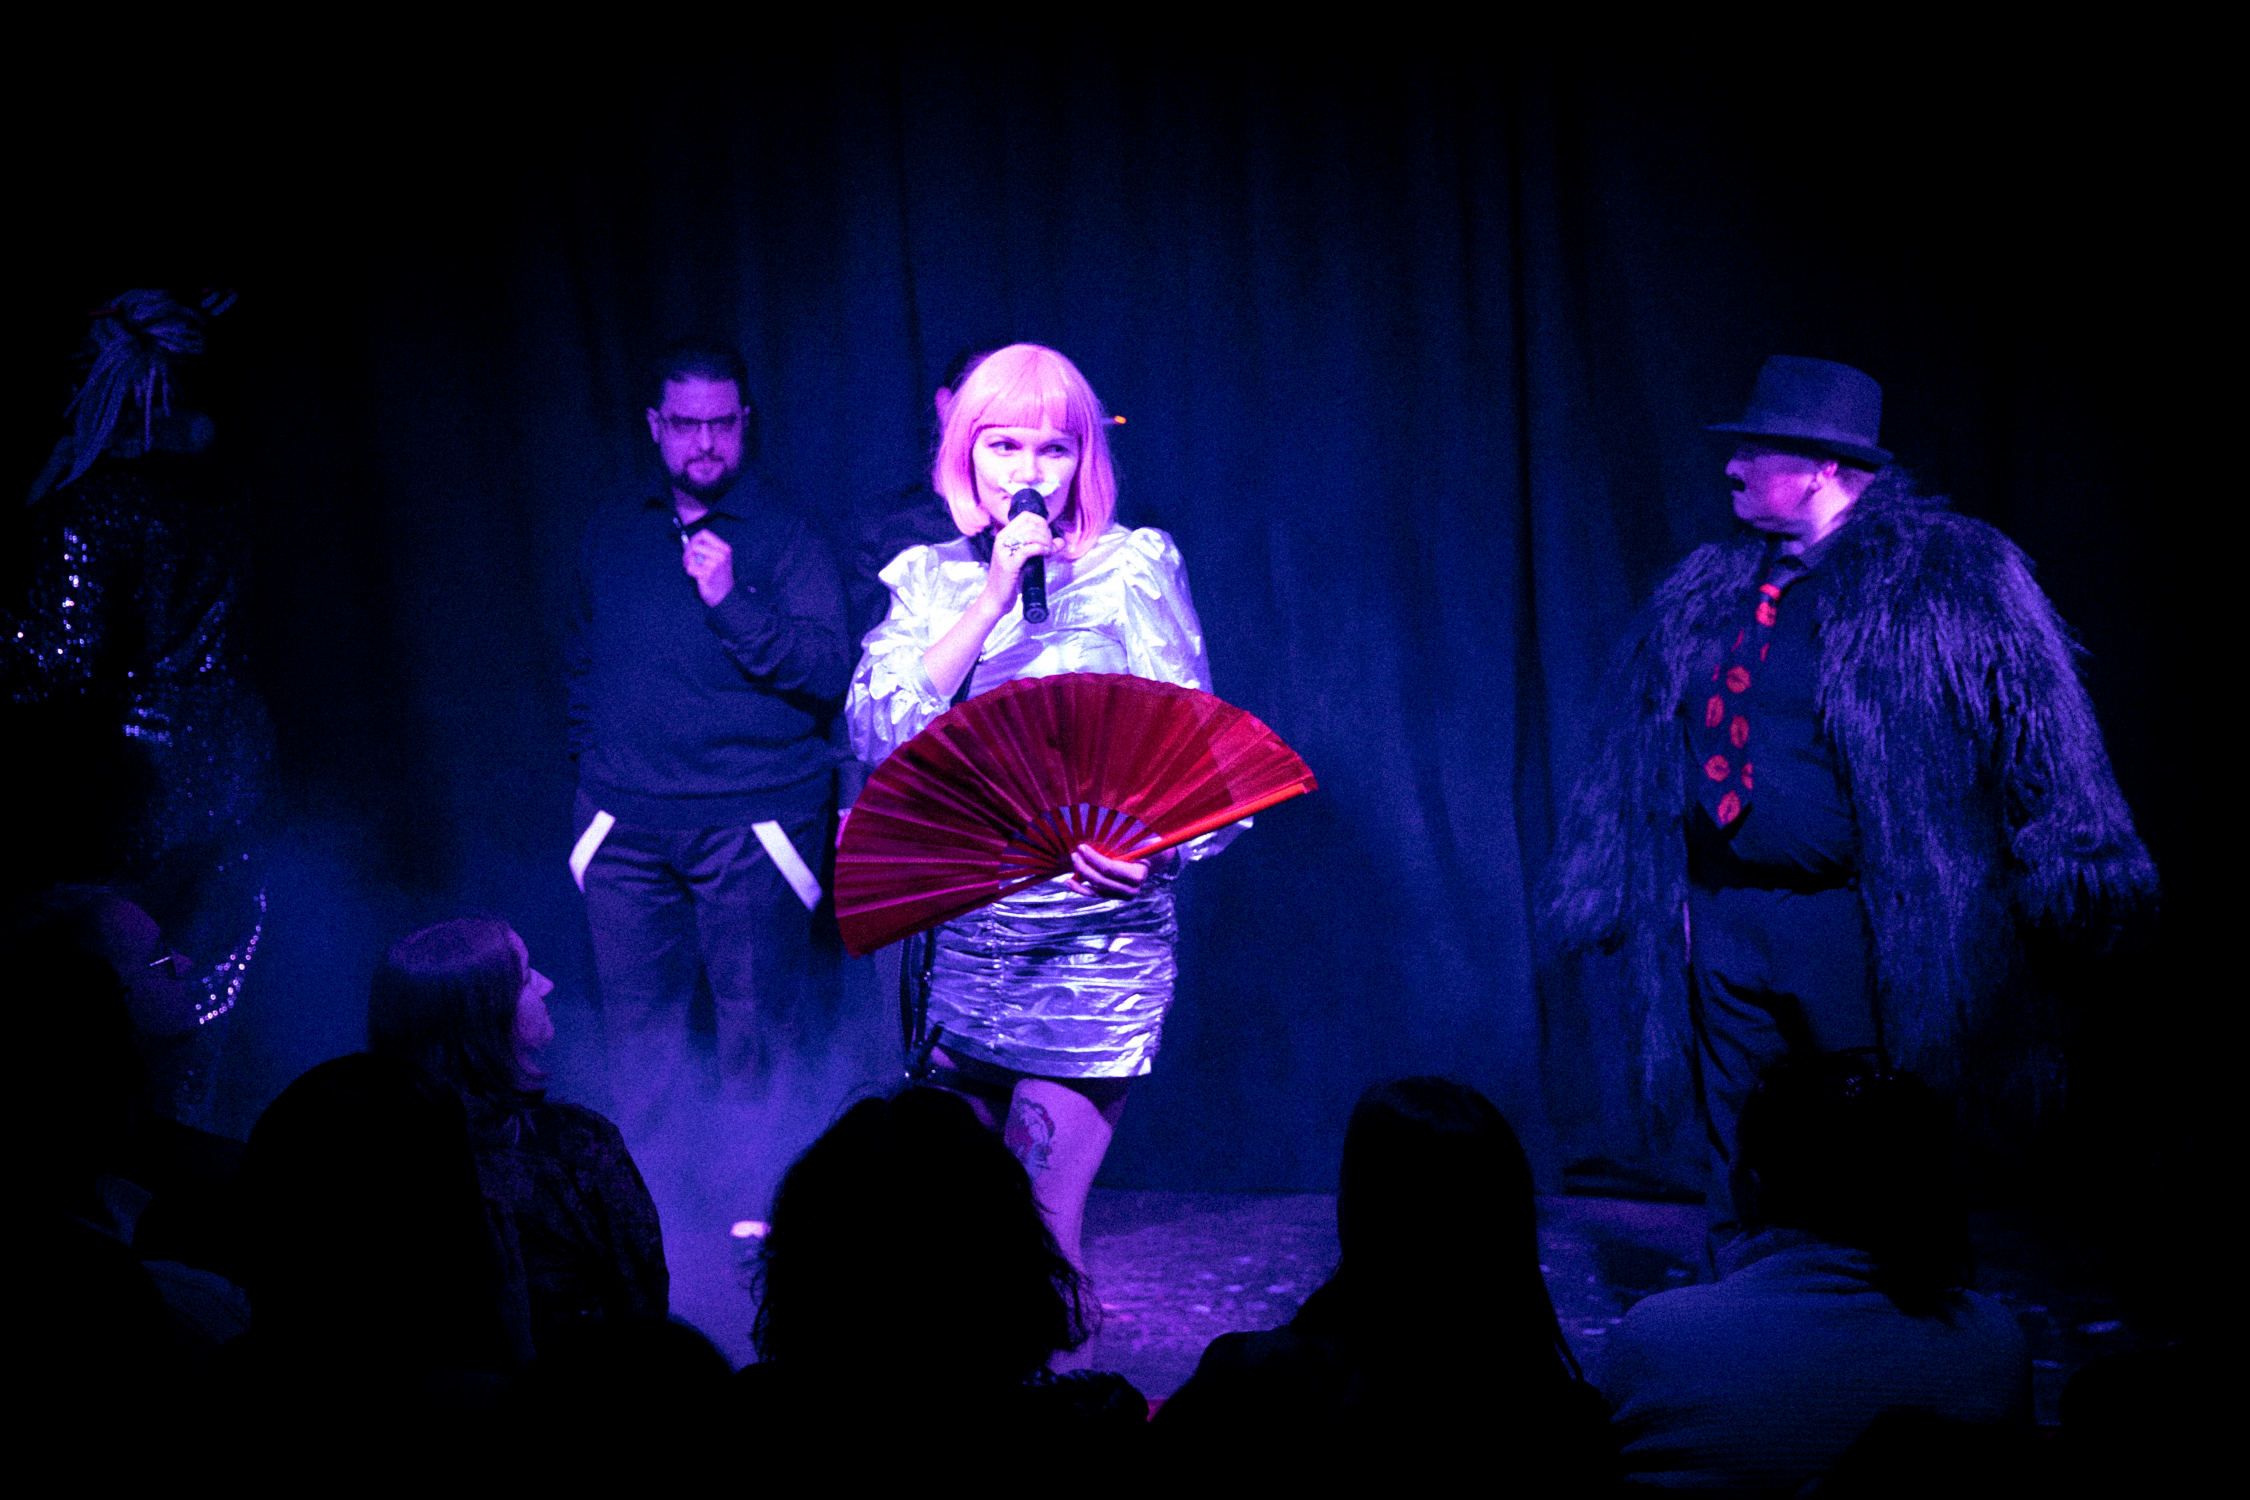 Na scenie występuje oświetlona reflektorem drag queen w różowej perółce, z białymi wąsami, trzyma czerwony wachlarz, na tle kurtyny widoczne są osoby w monochromatycznych czarnych kostiumach.